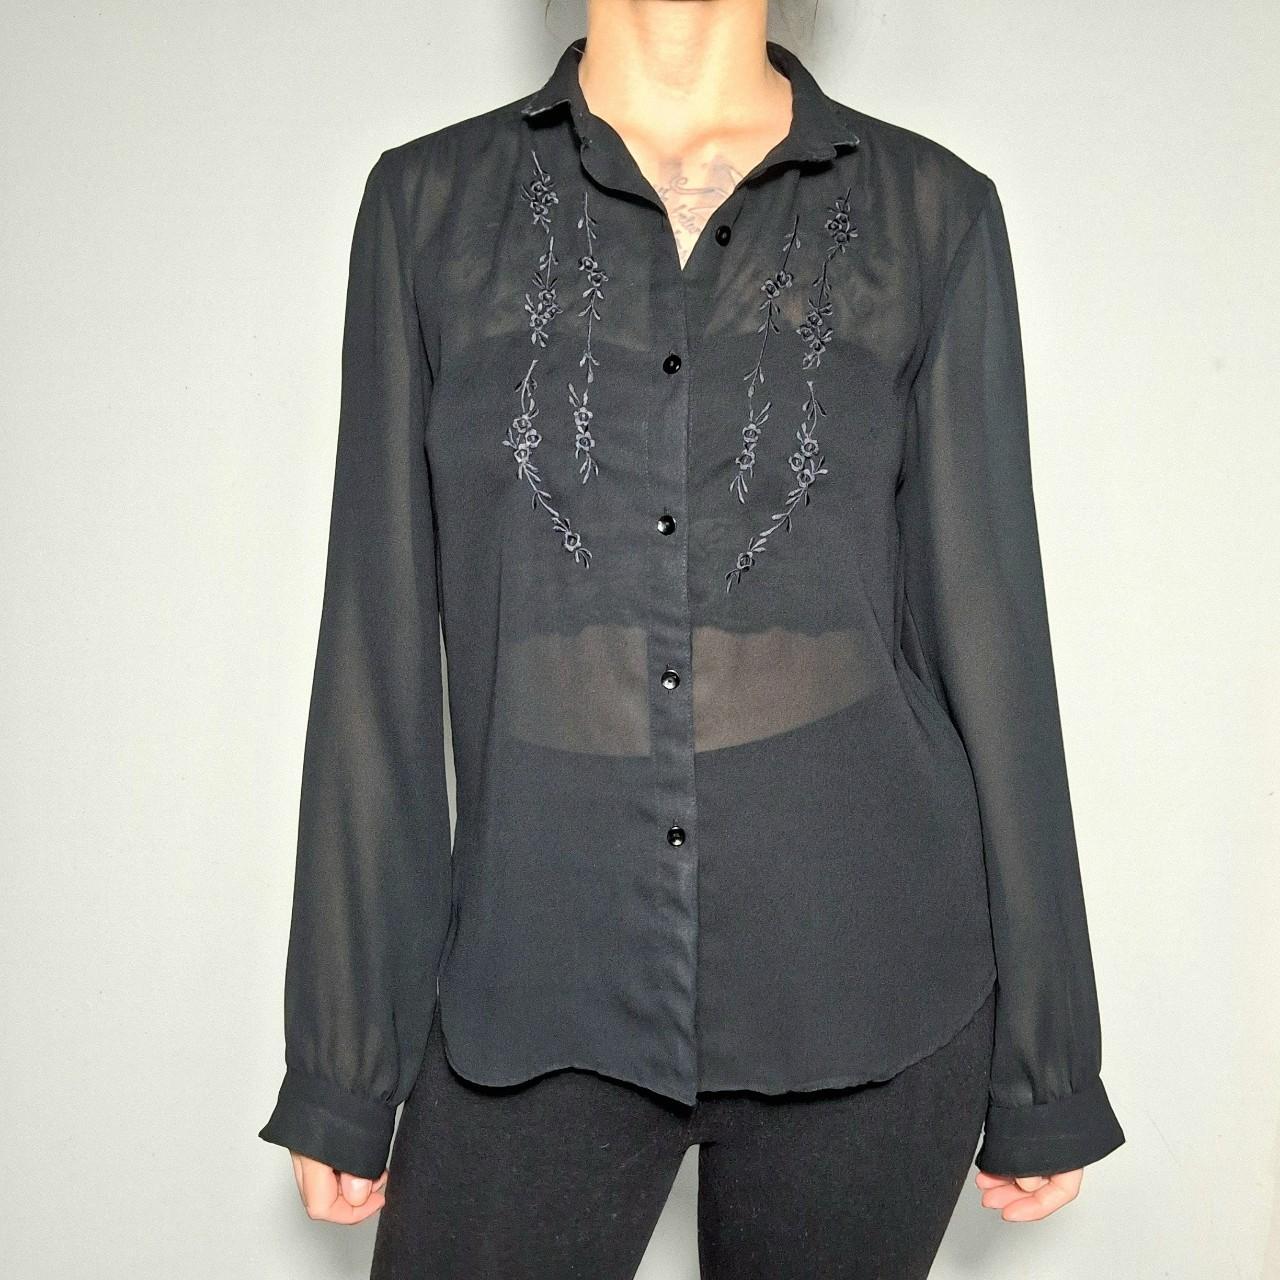 Vintage 1970's embroidered sheer black blouse by... - Depop